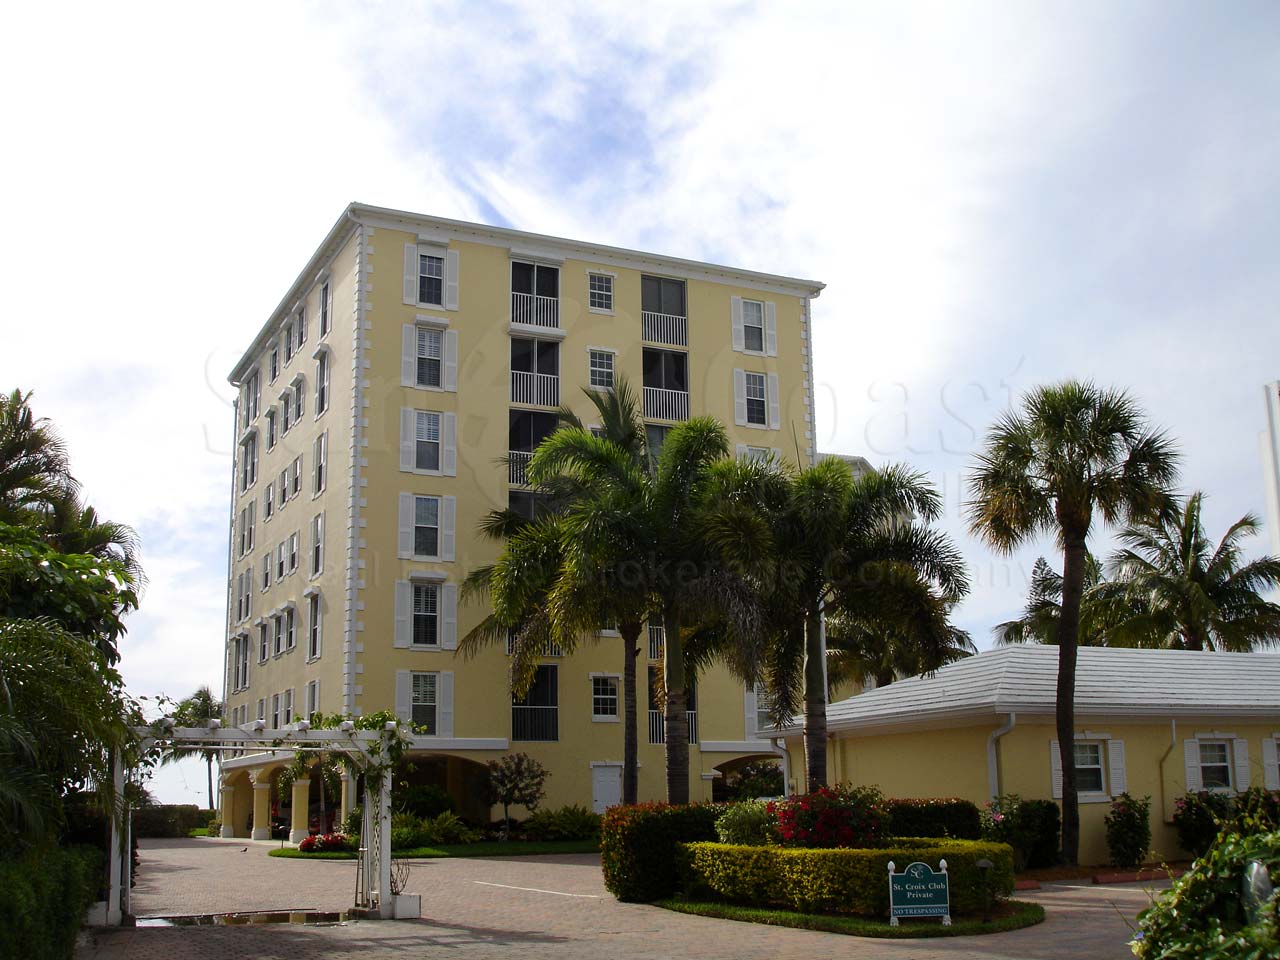 St Croix Club Condominium Building